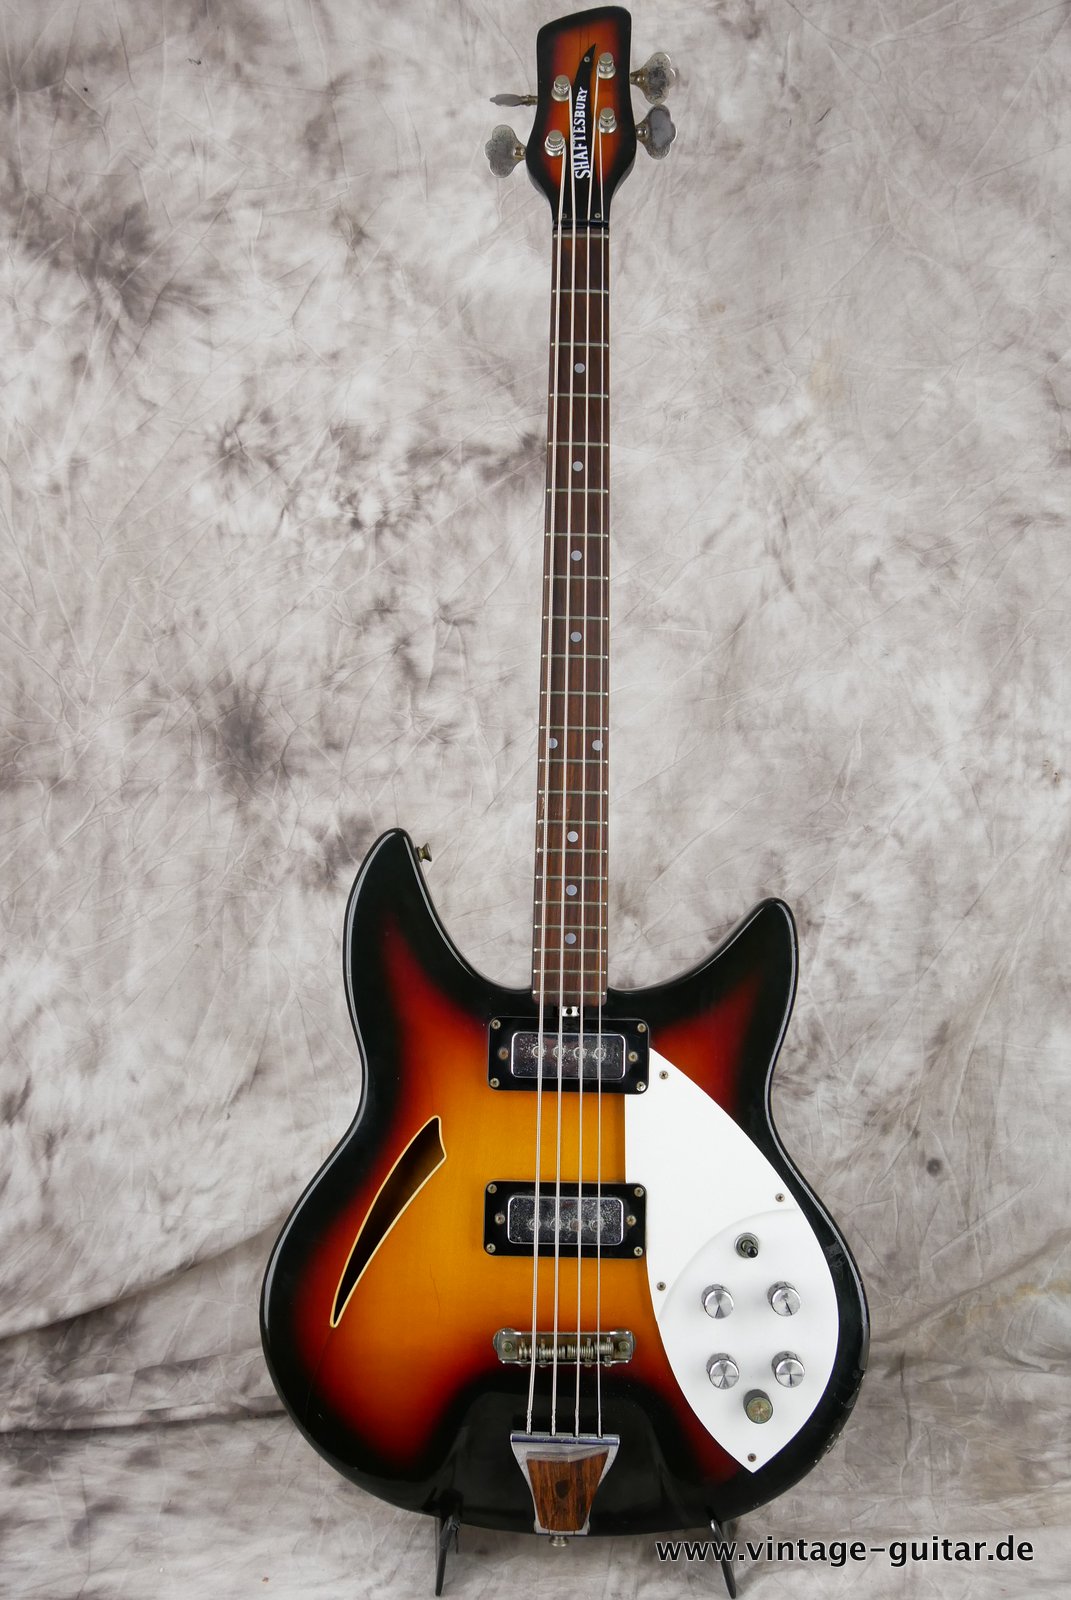 Shaftesbury-Bass-3263-1969-Italy-Eko-made-001.JPG